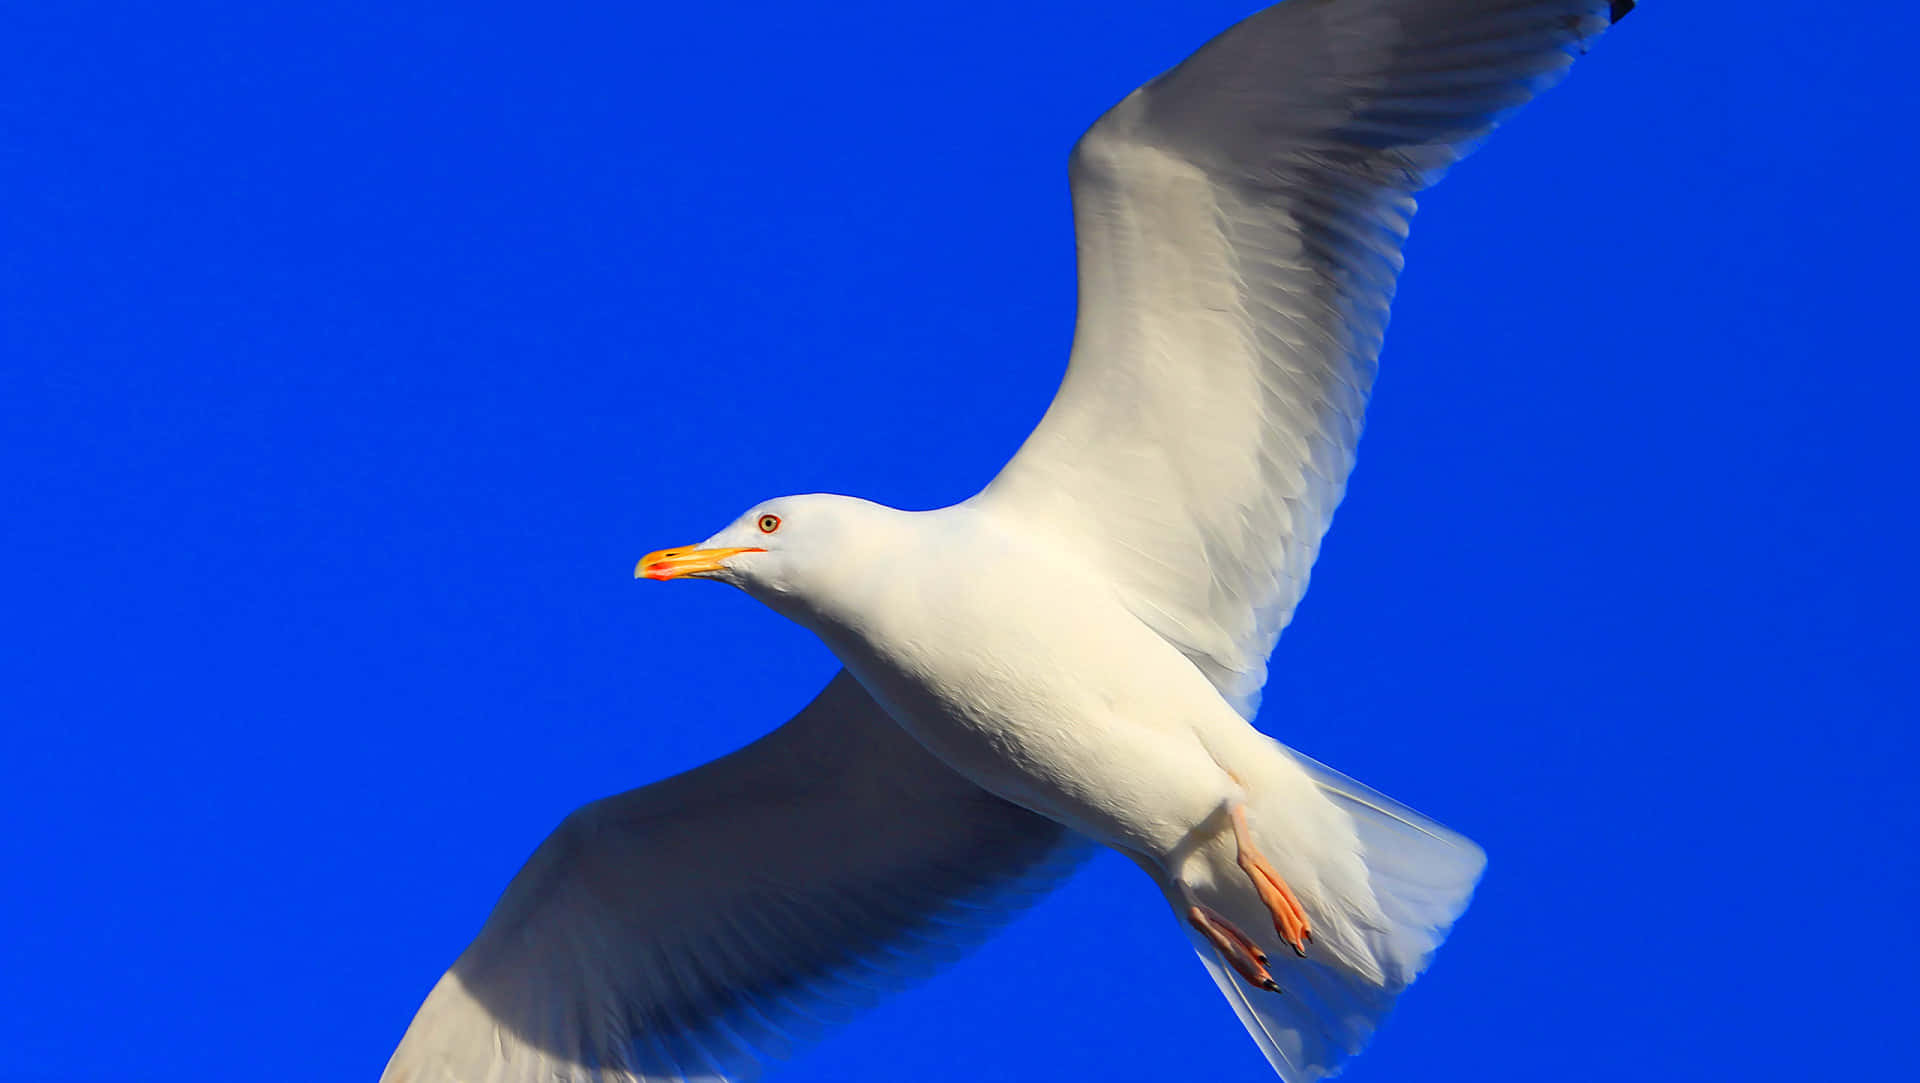 Soaring Seagull Against Blue Sky.jpg Wallpaper